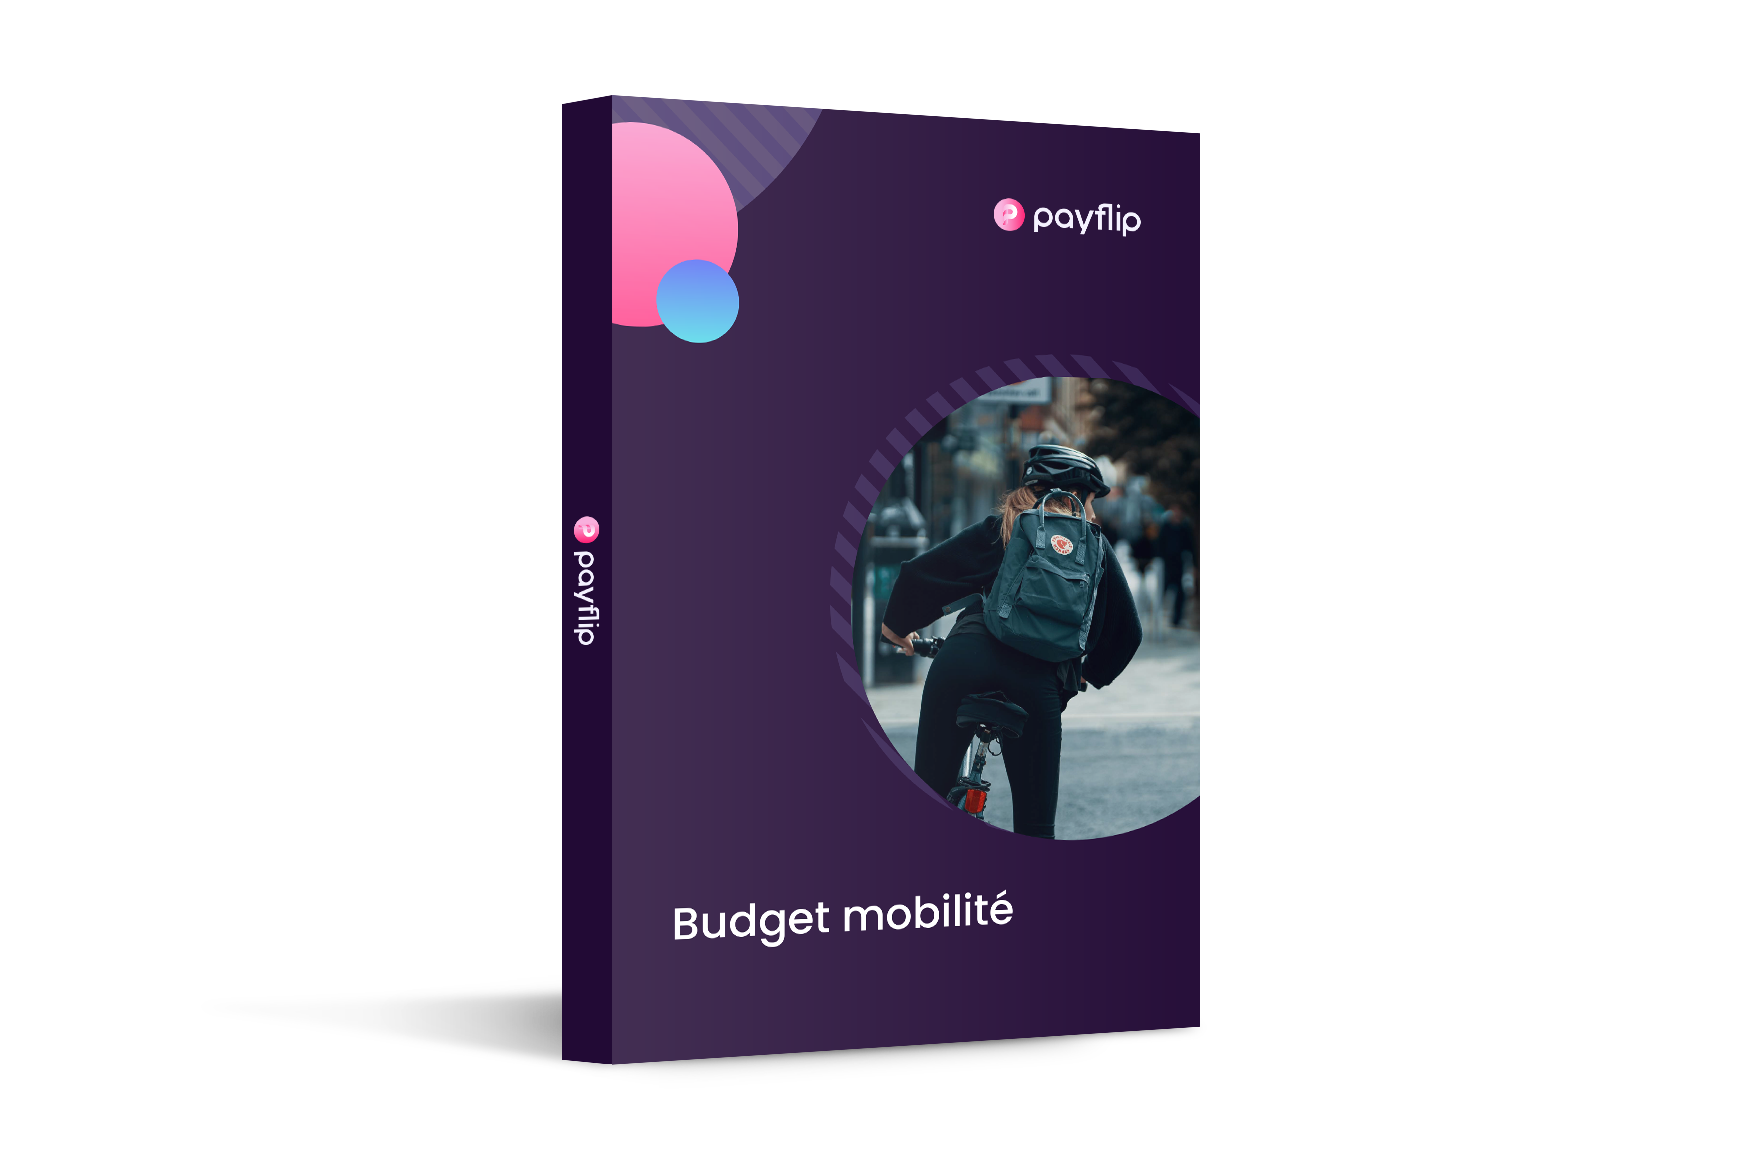 Budget mobilite